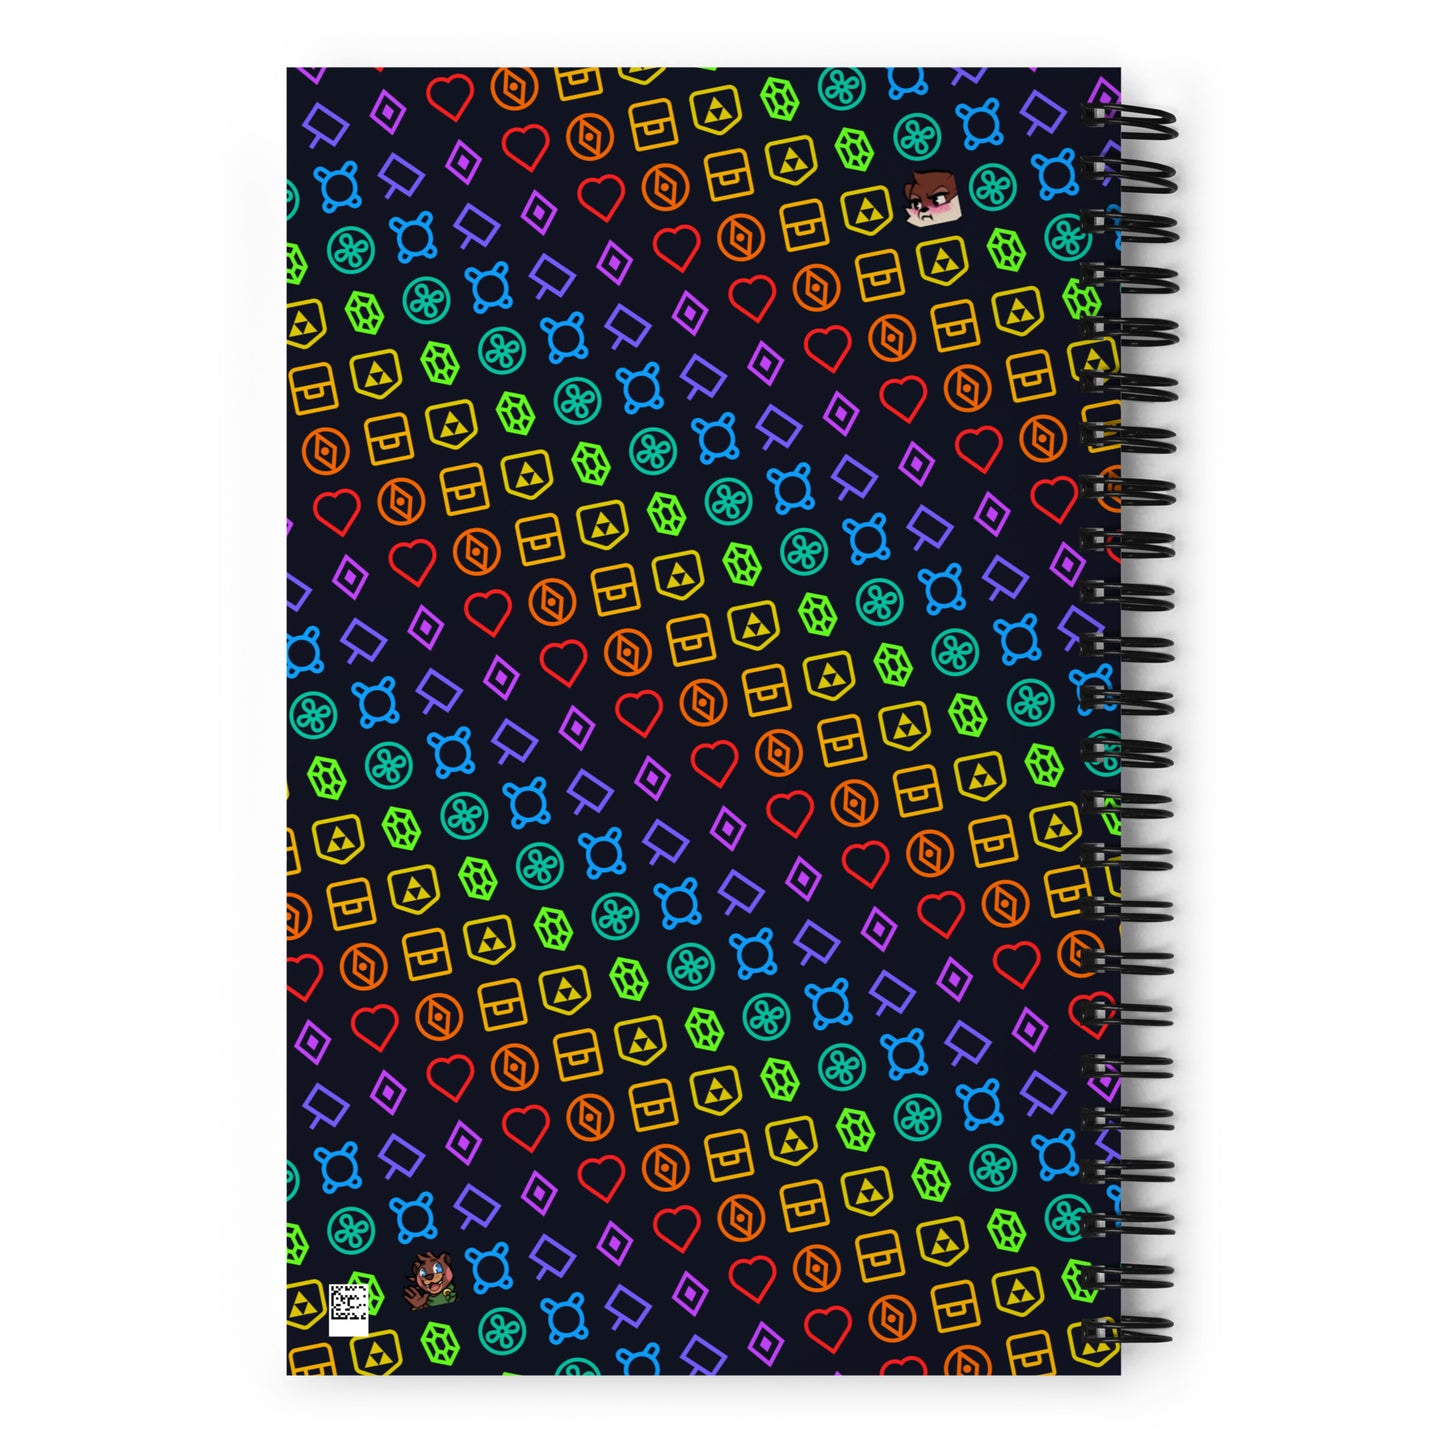 Zeldathon - Spiral Notebook - Icons